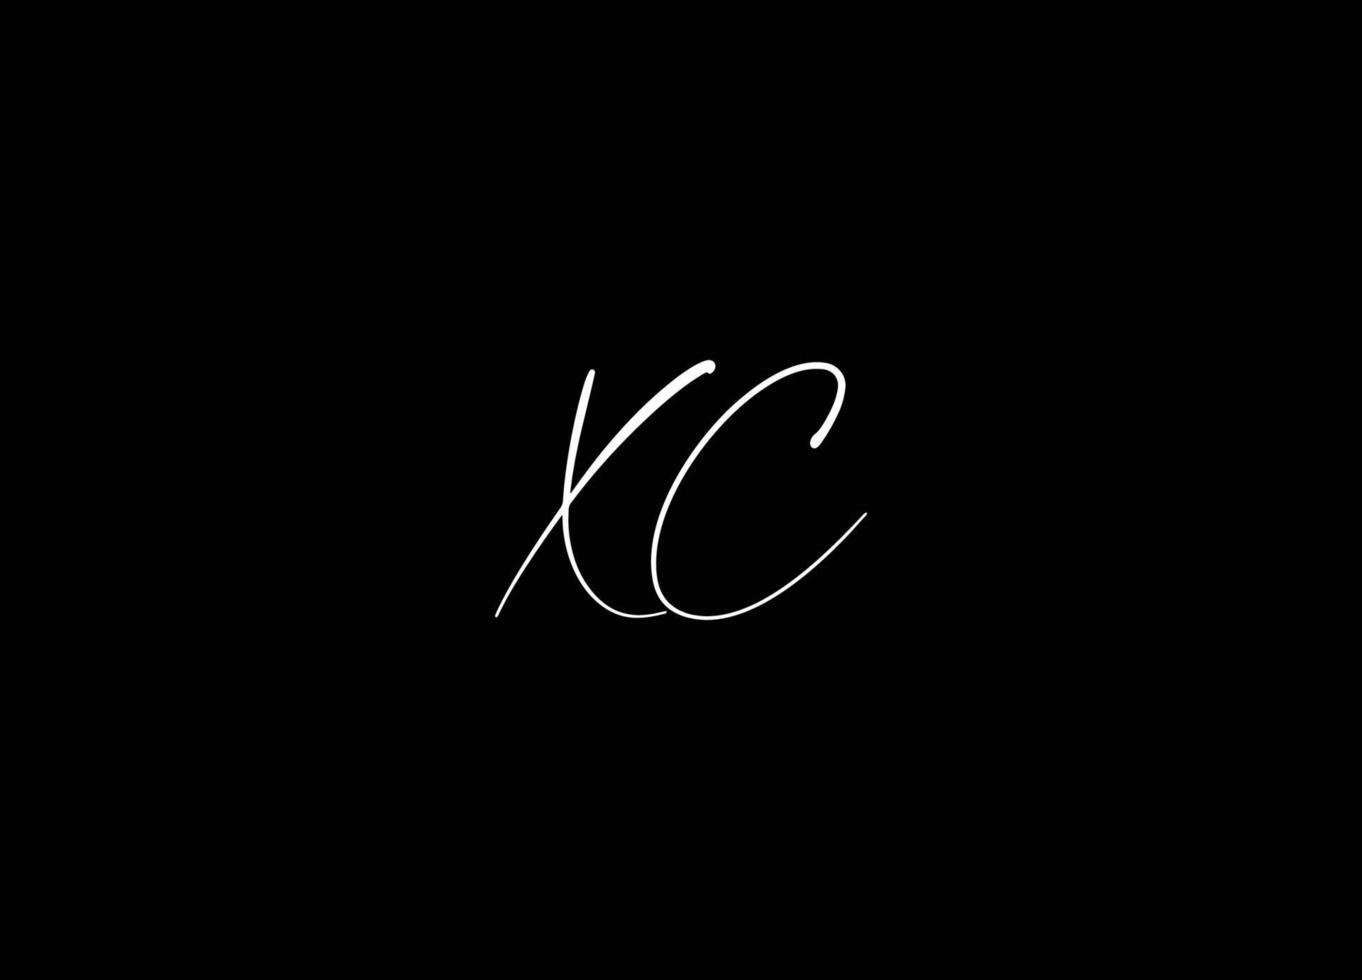 xc logo conception et entreprise logo vecteur